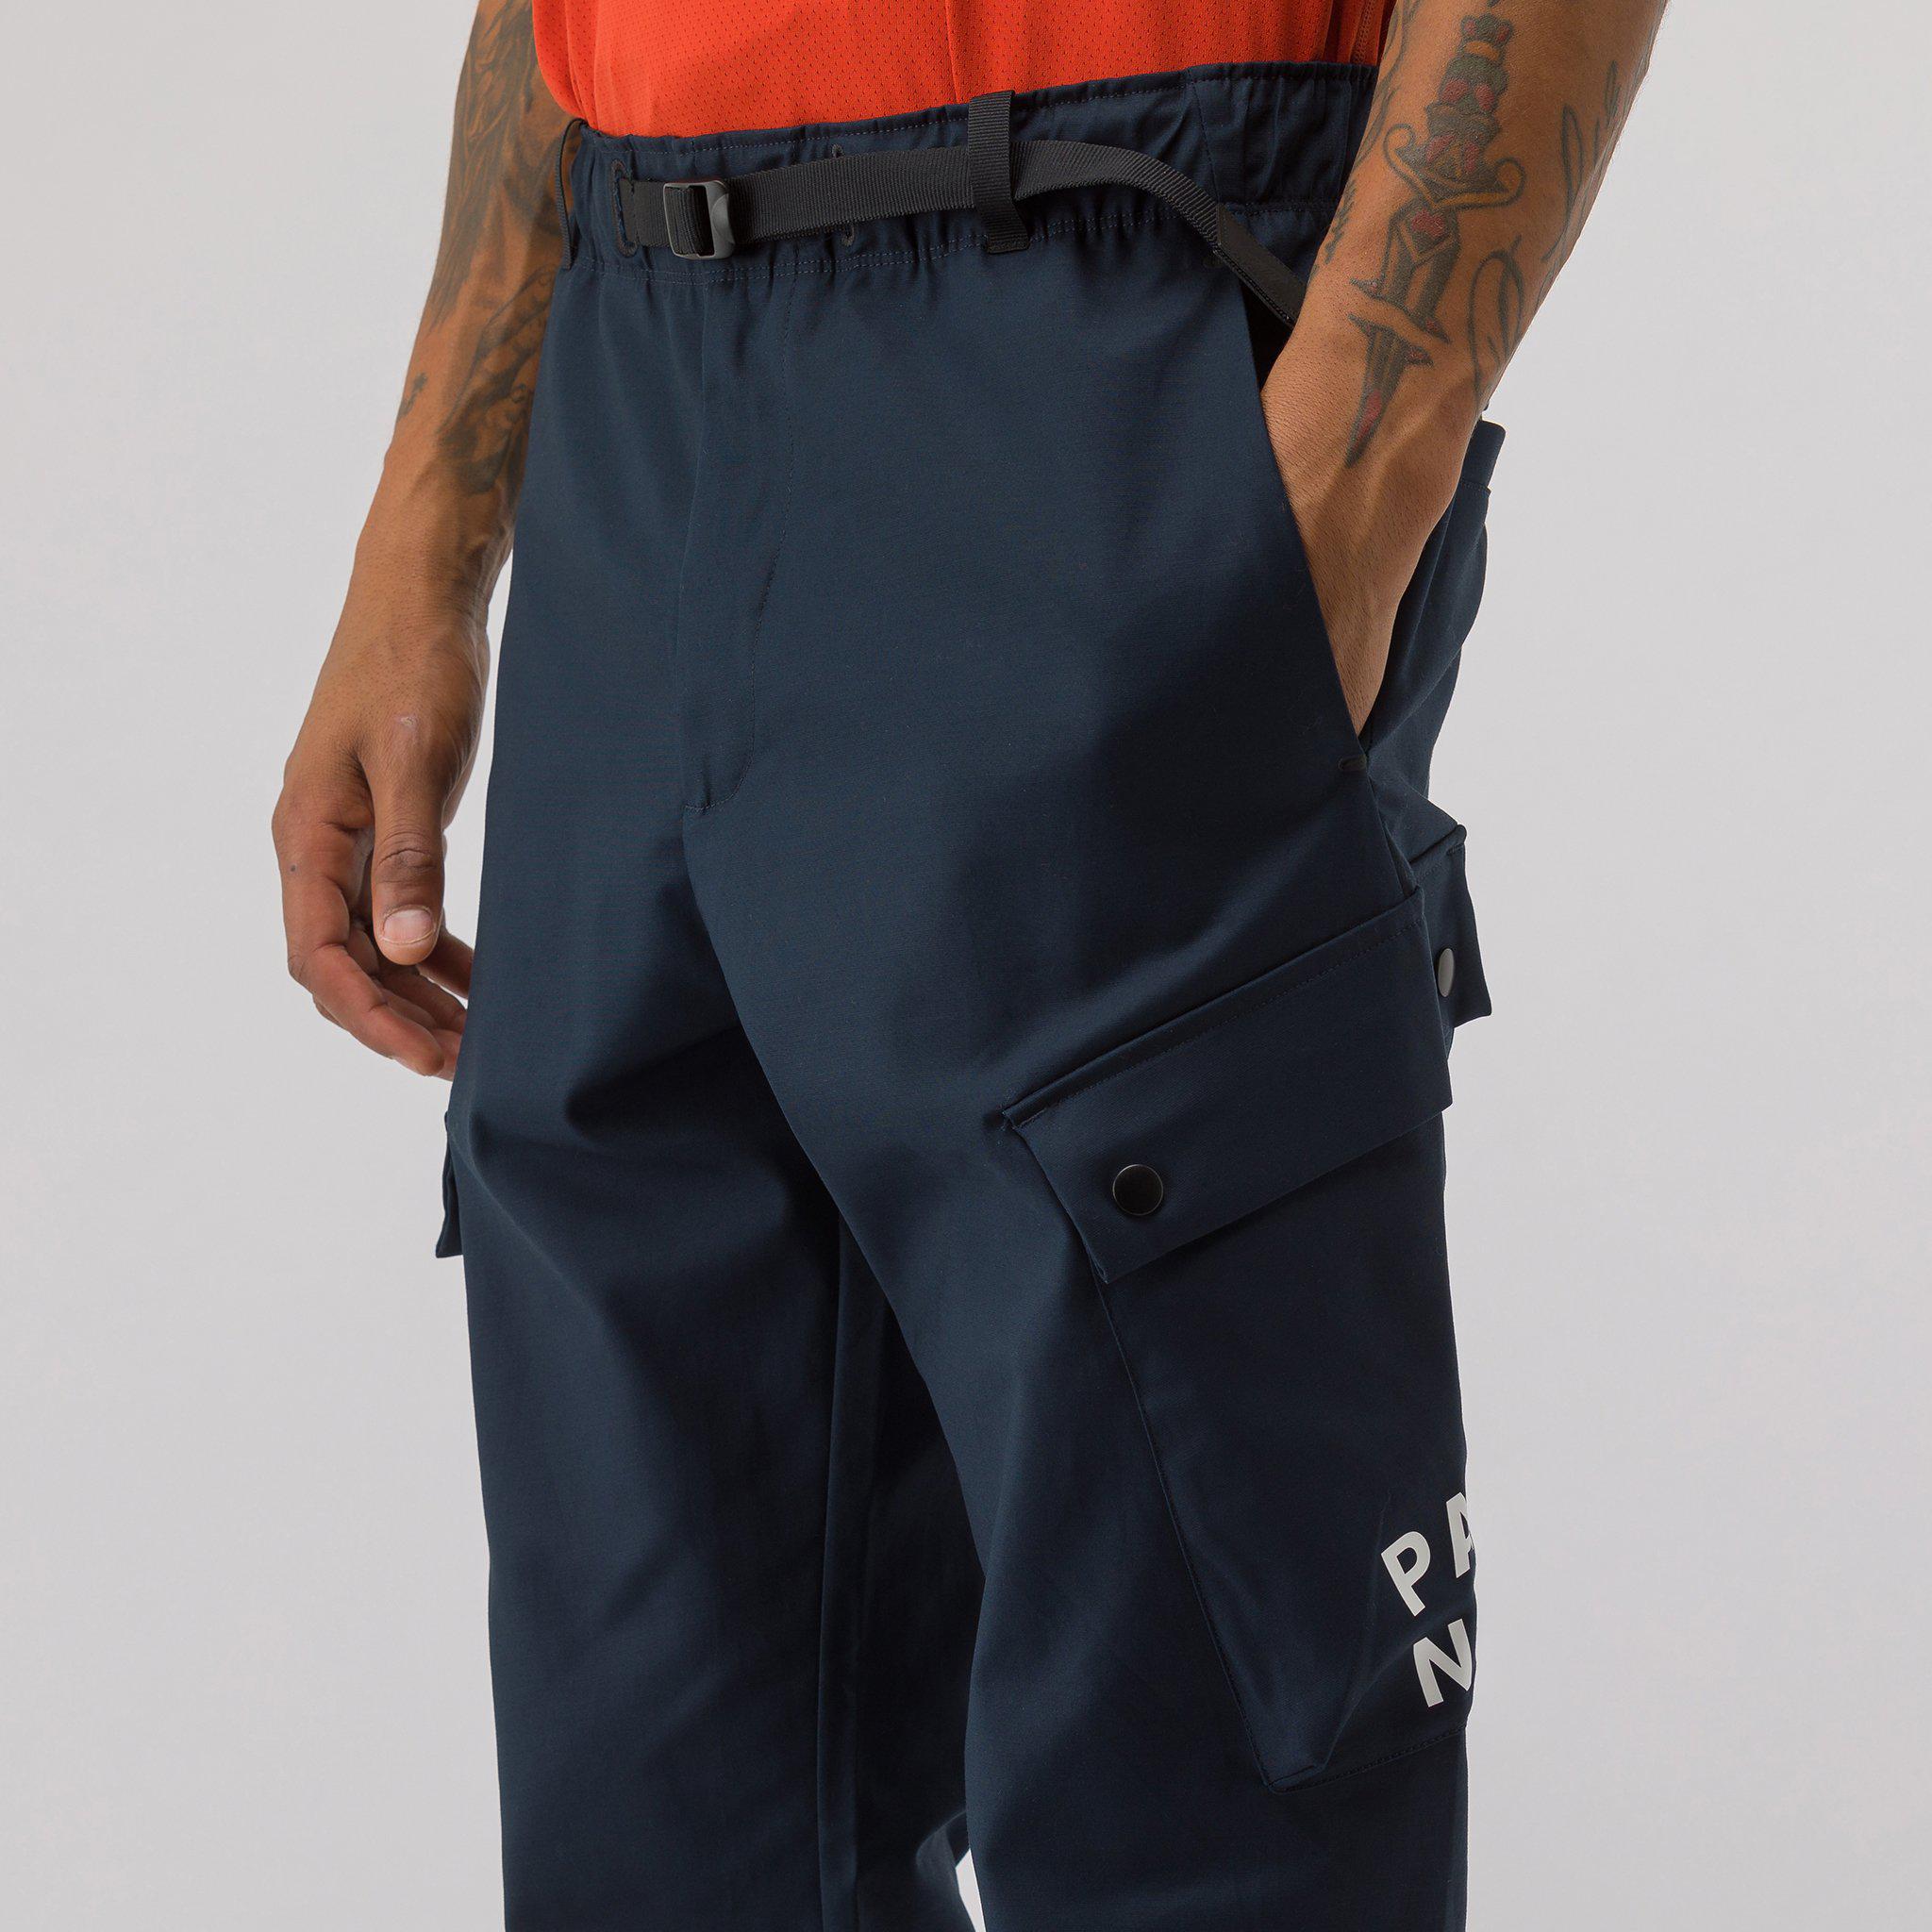 Nike X Patta Cargo Pants In Dark Obsidian in Blue for Men - Lyst